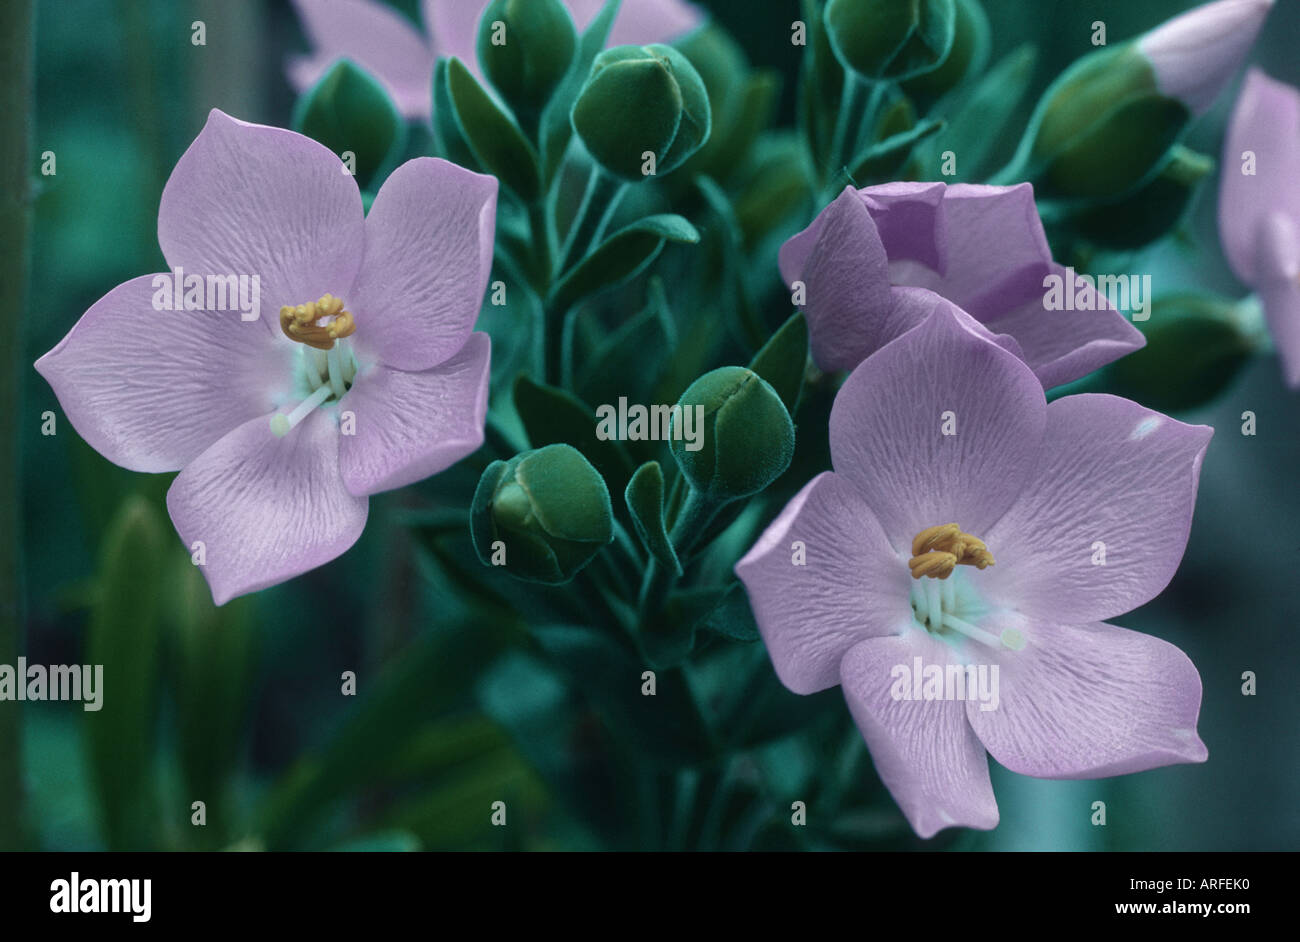 Orphium frutescens (Orphium frutescens), flowers Stock Photo